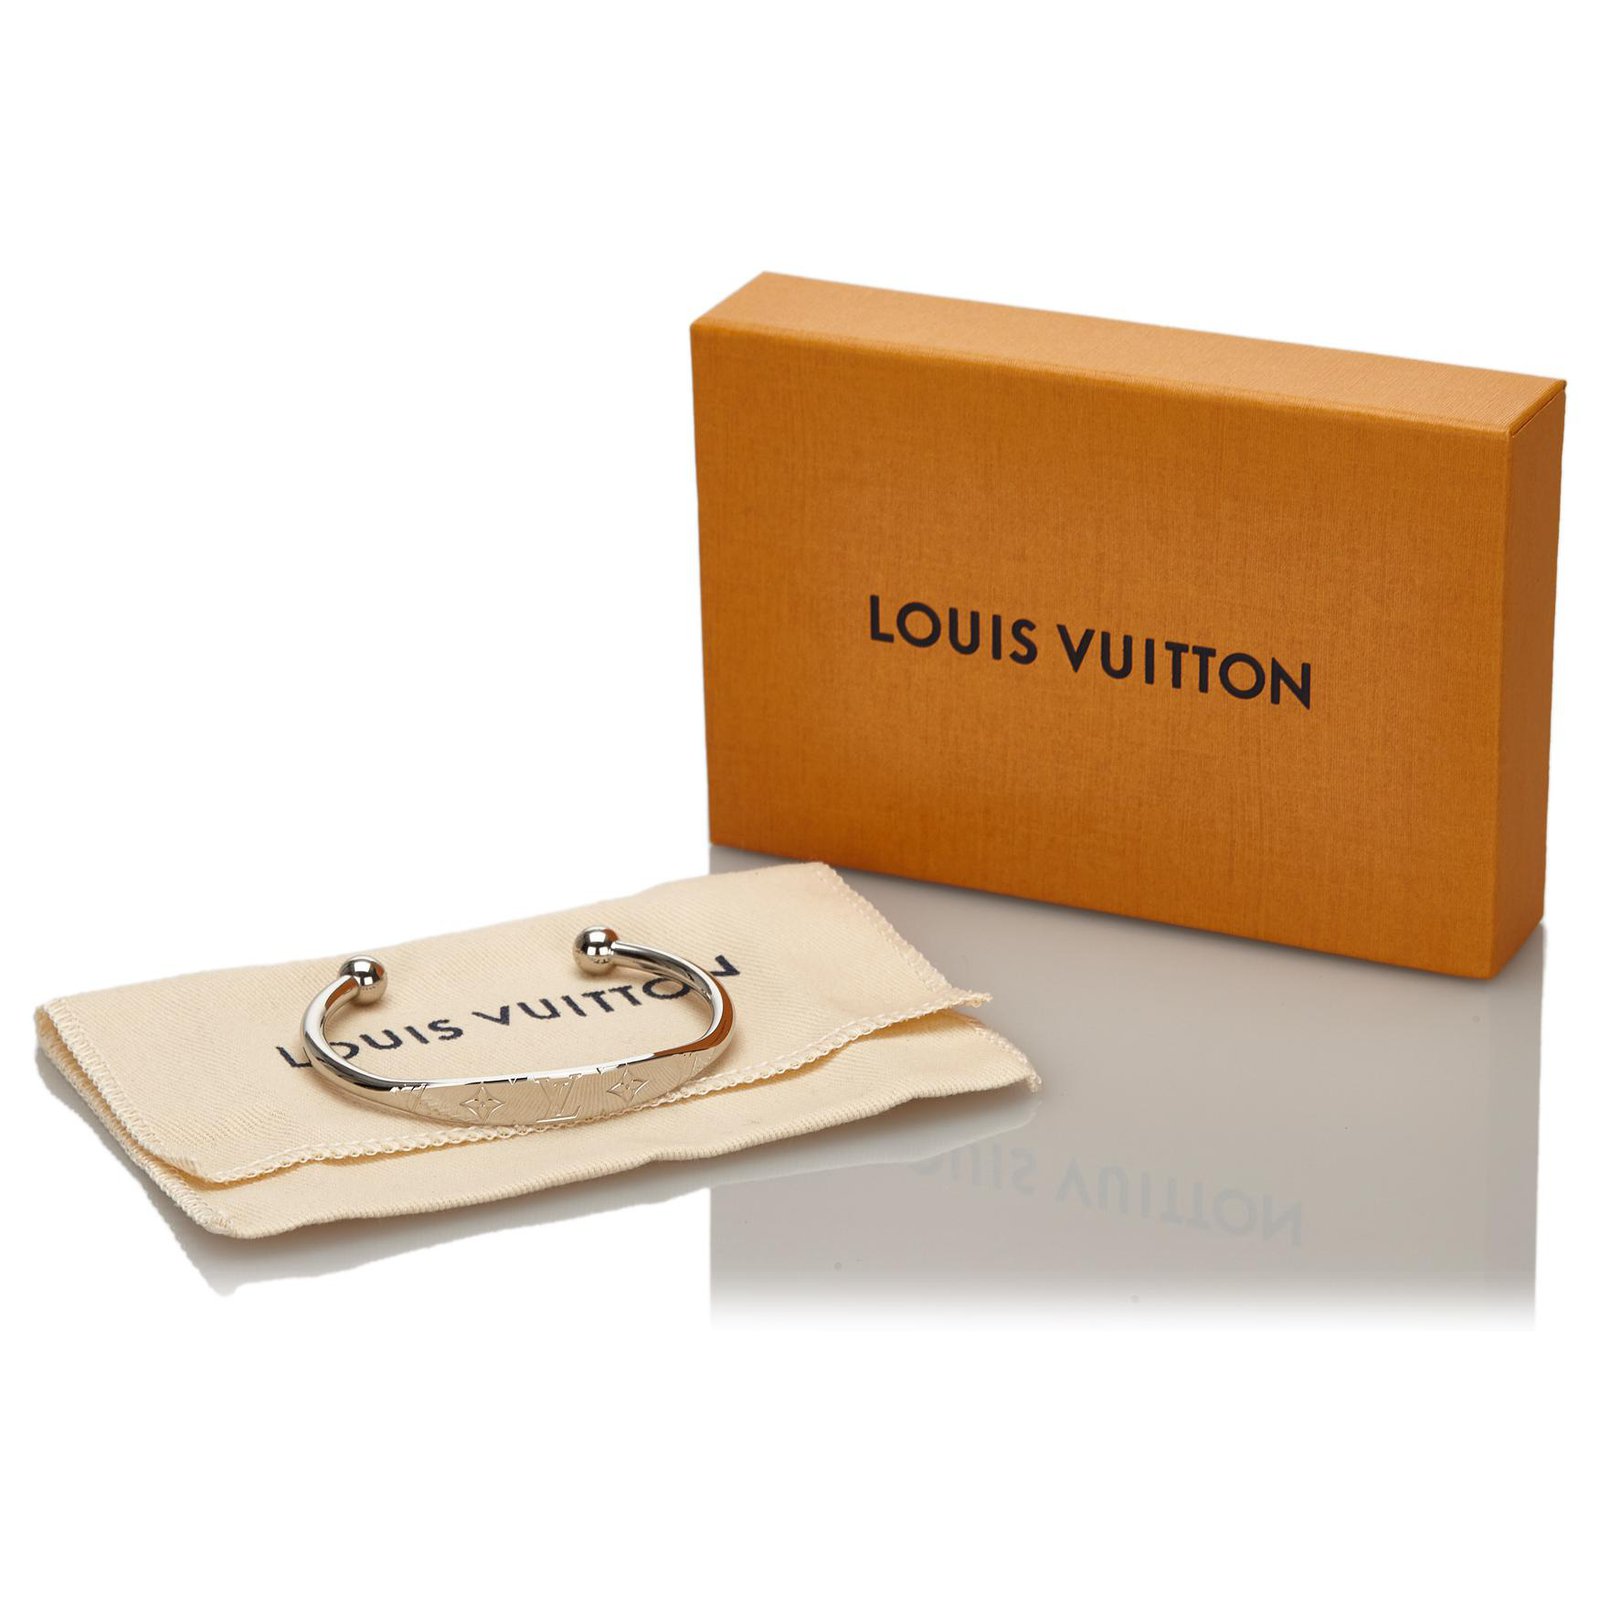 Louis Vuitton Monogram jonc Silver Metal. Size M